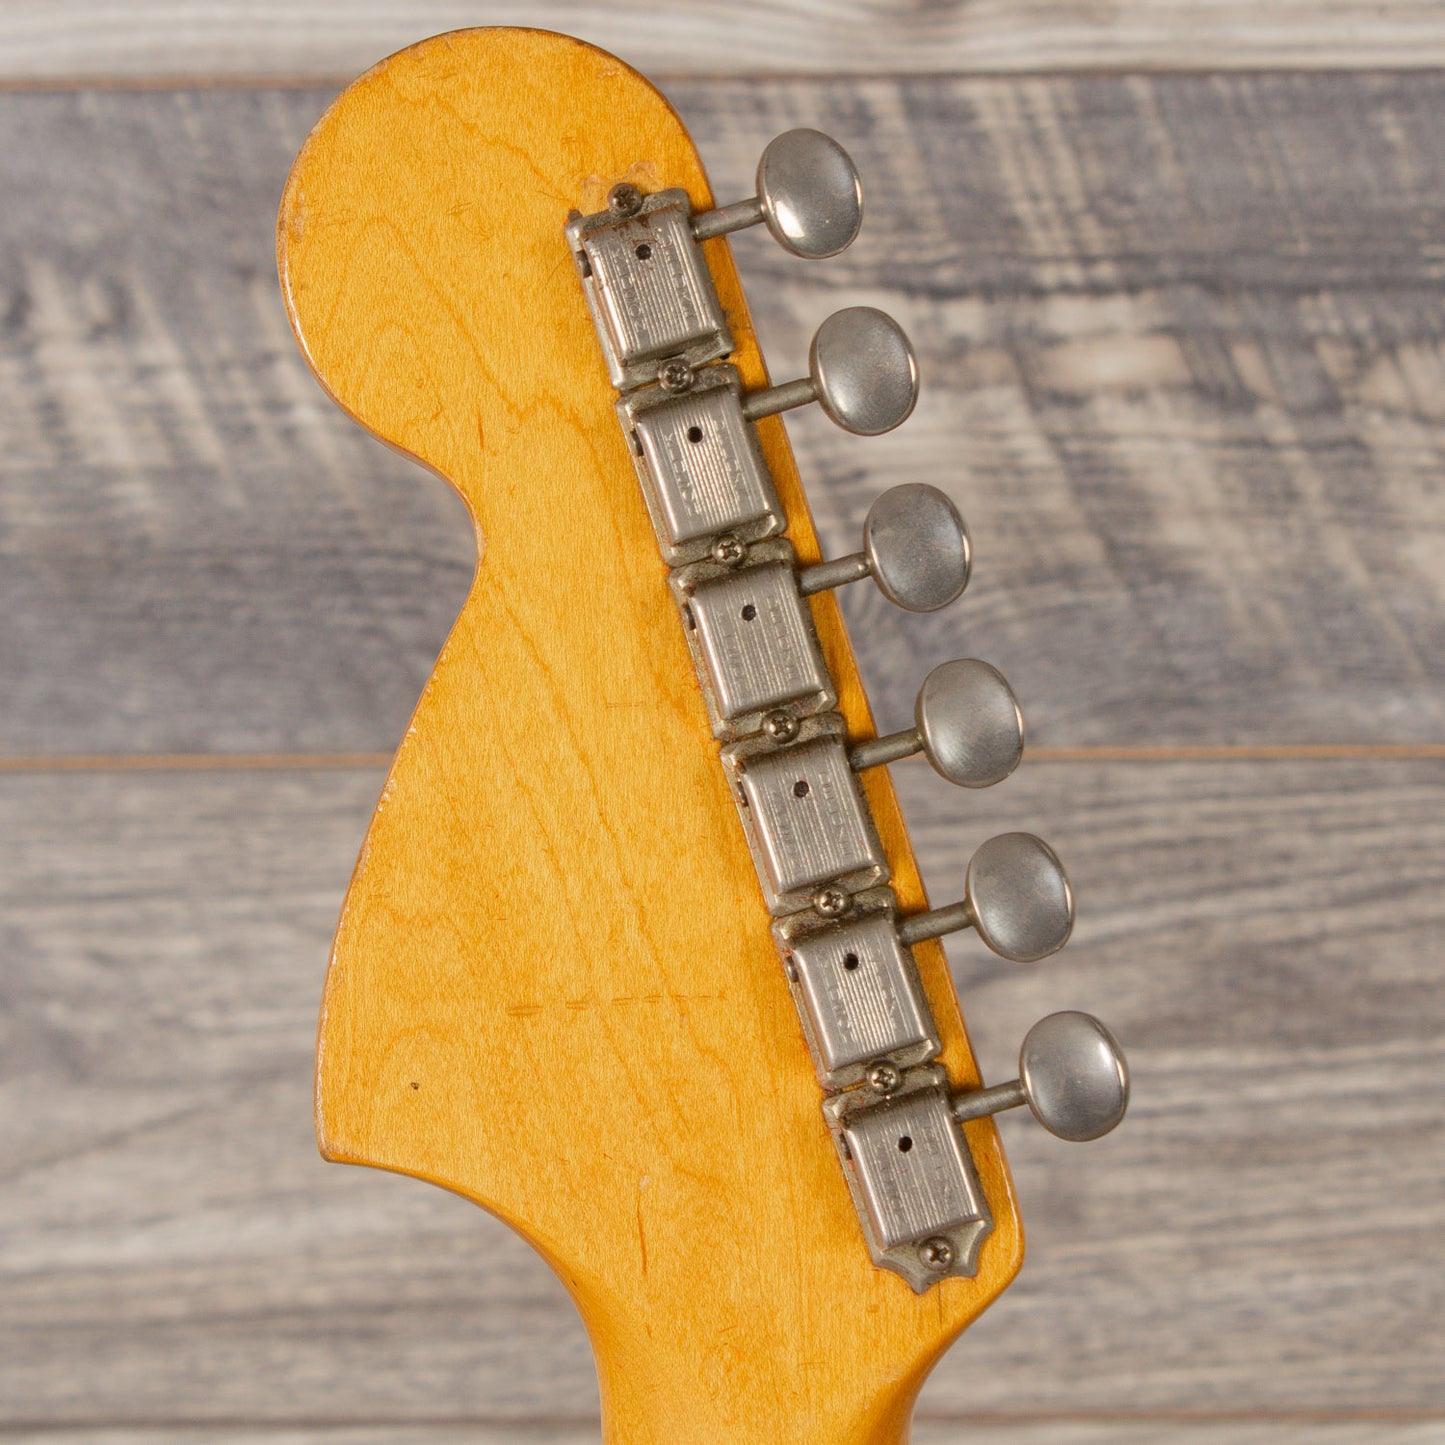 1966 Fender Stratocaster - Olympic White